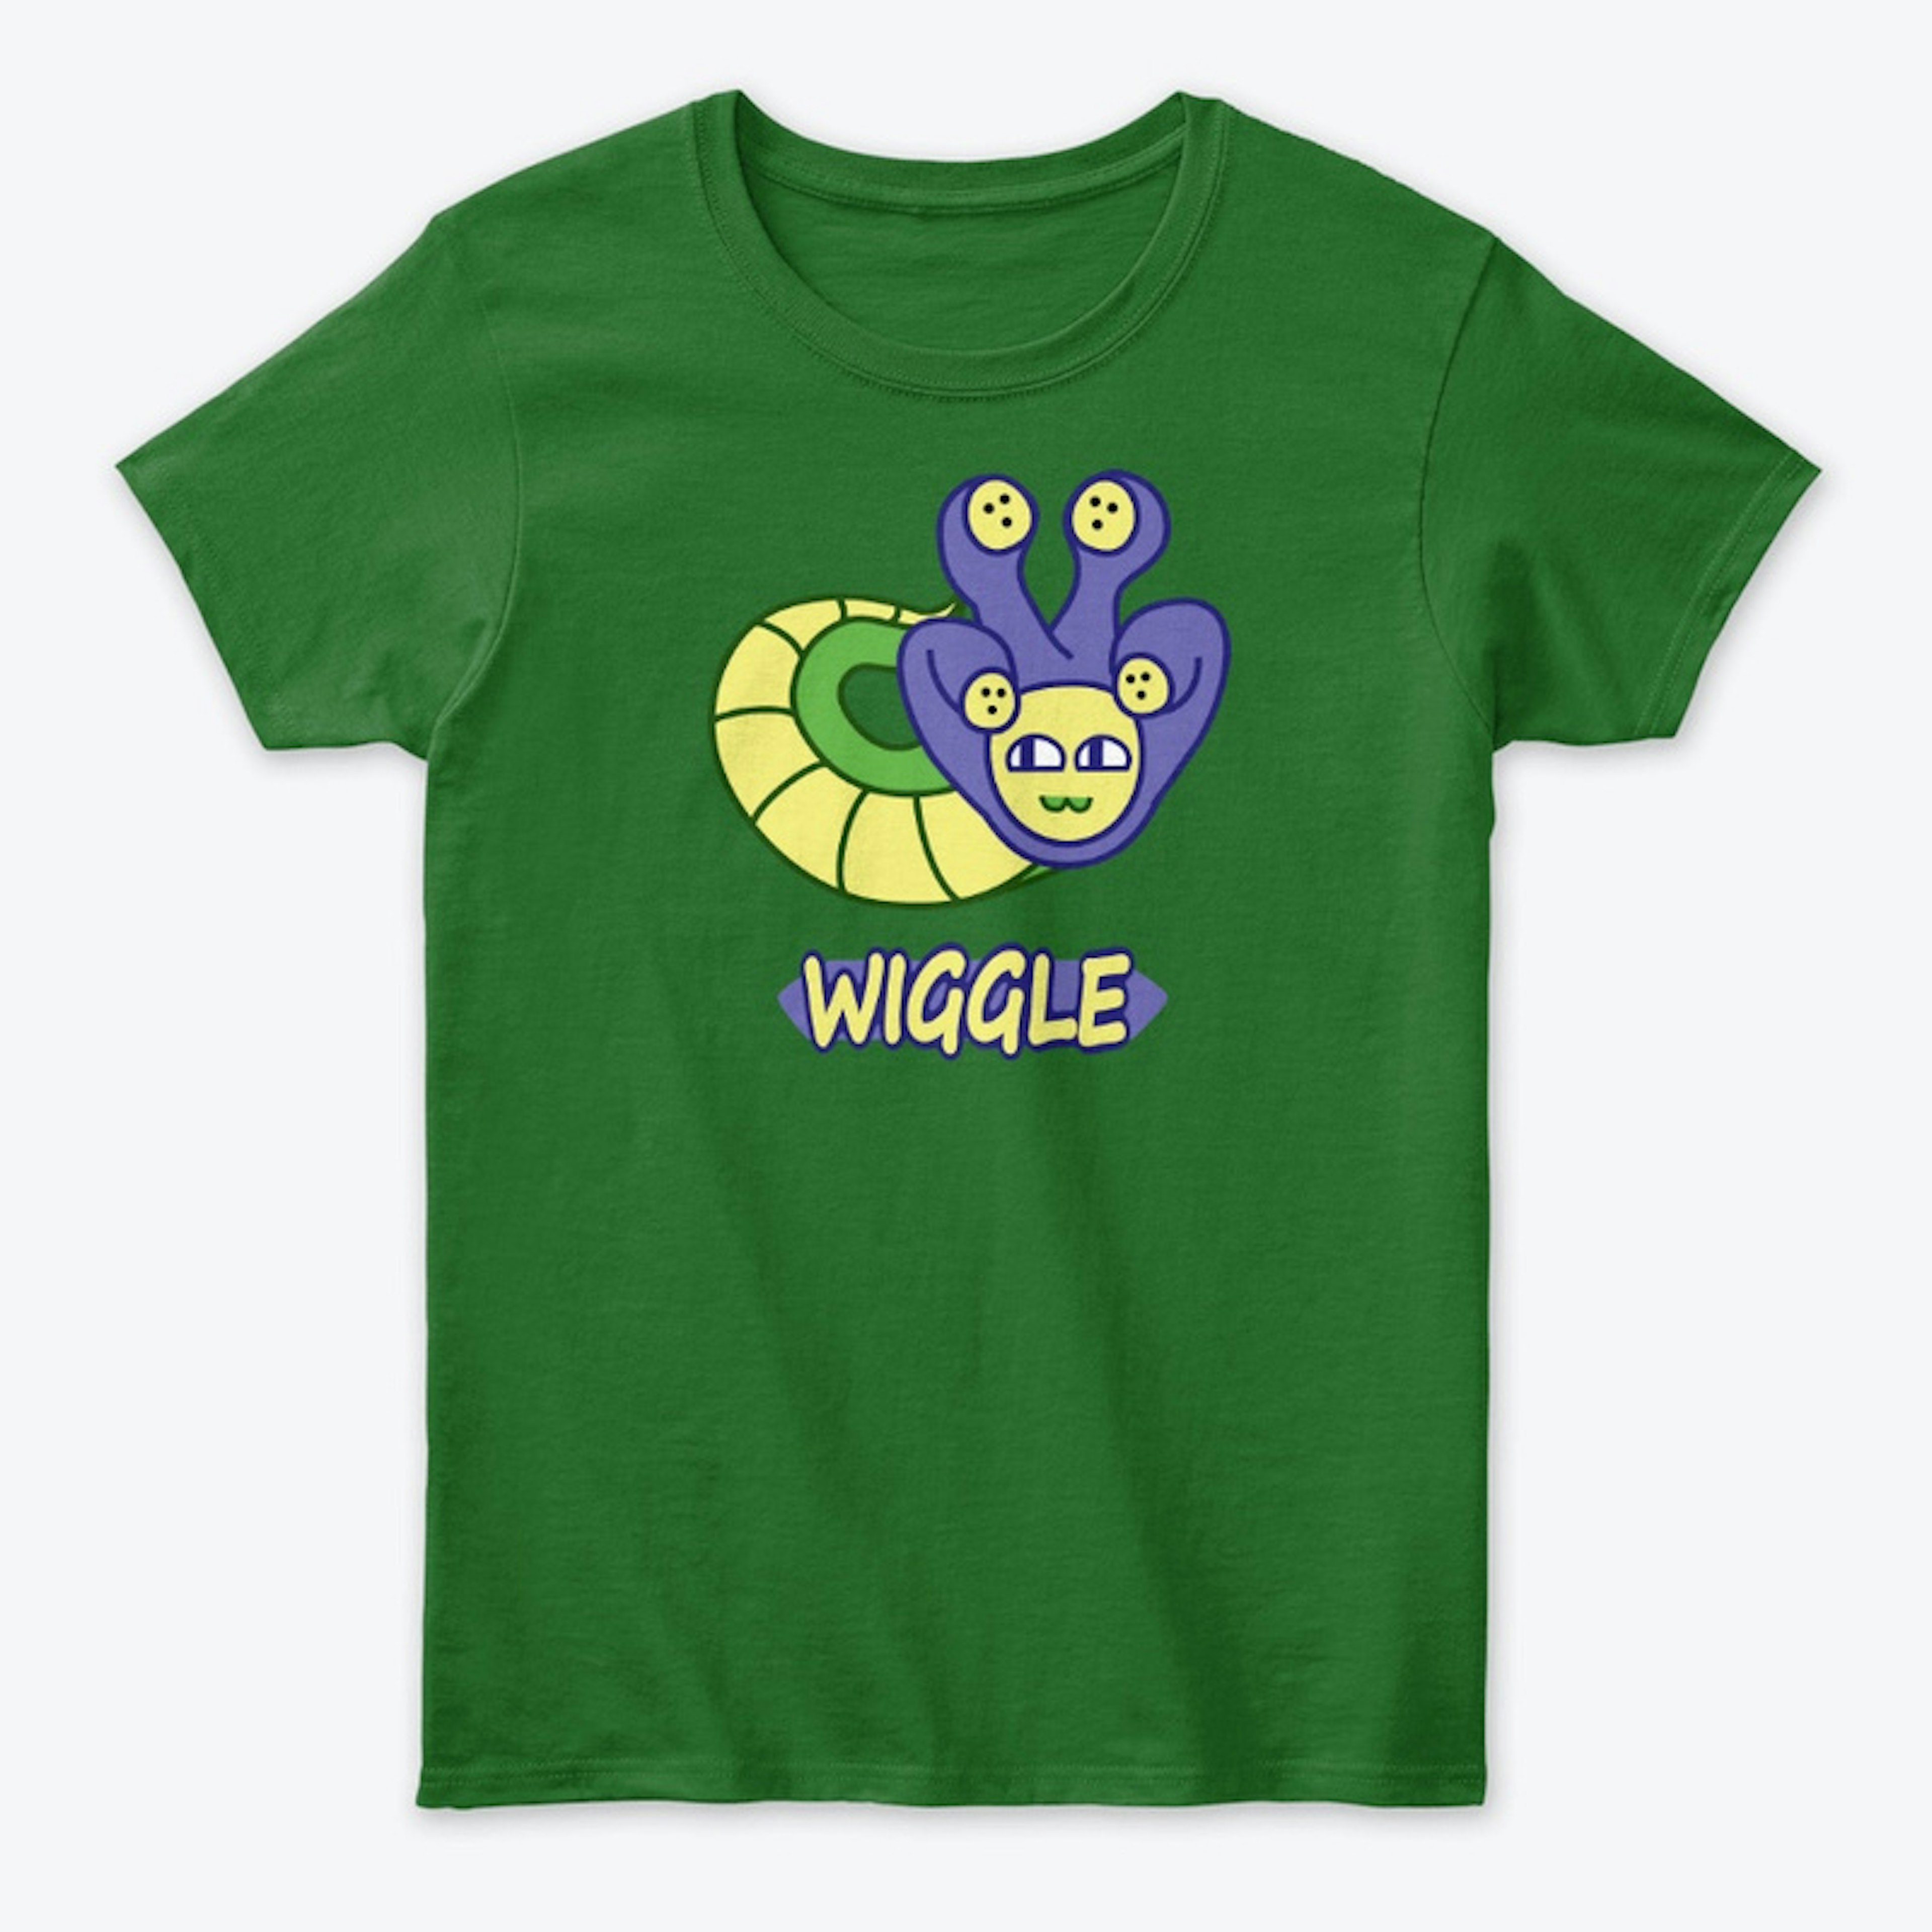 Wiggle shirt + Logo on back